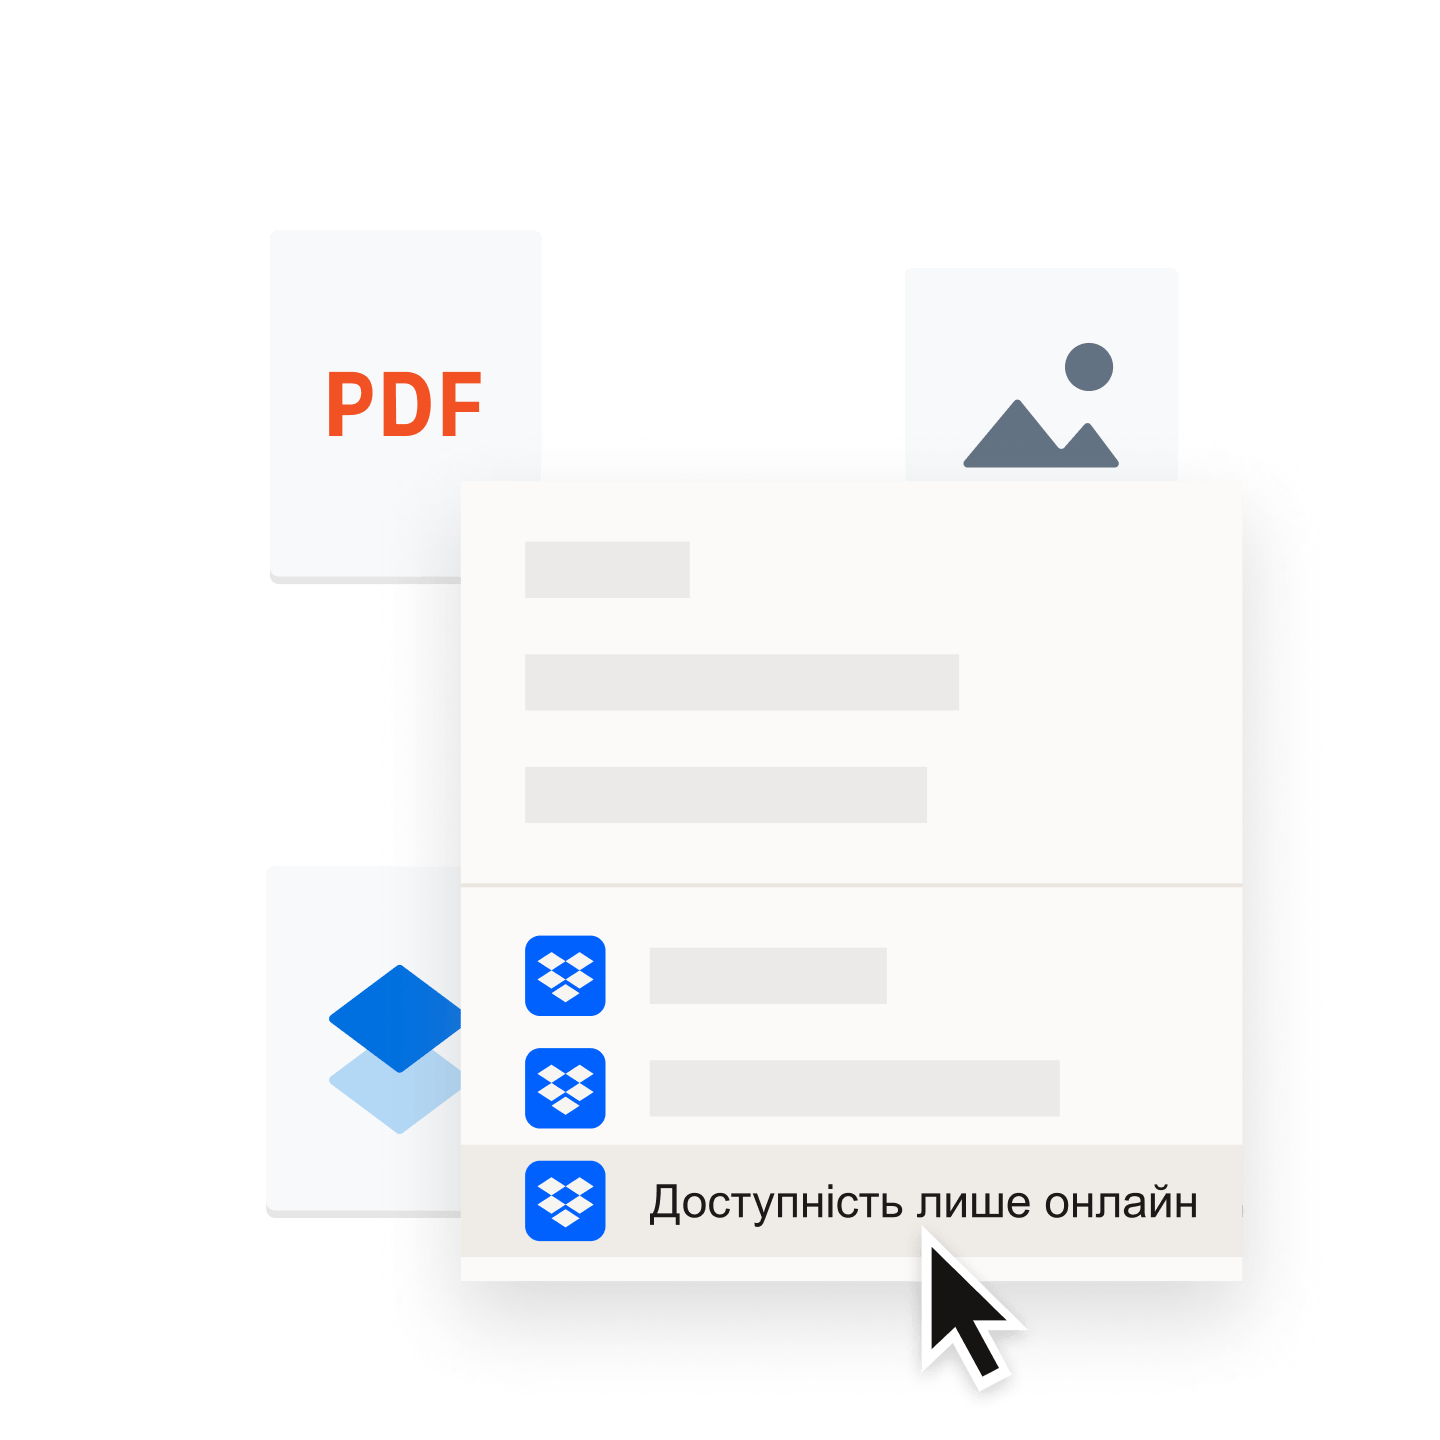 Збереження PDF‑файлу в папці Dropbox, яку позначено як «лише онлайн»